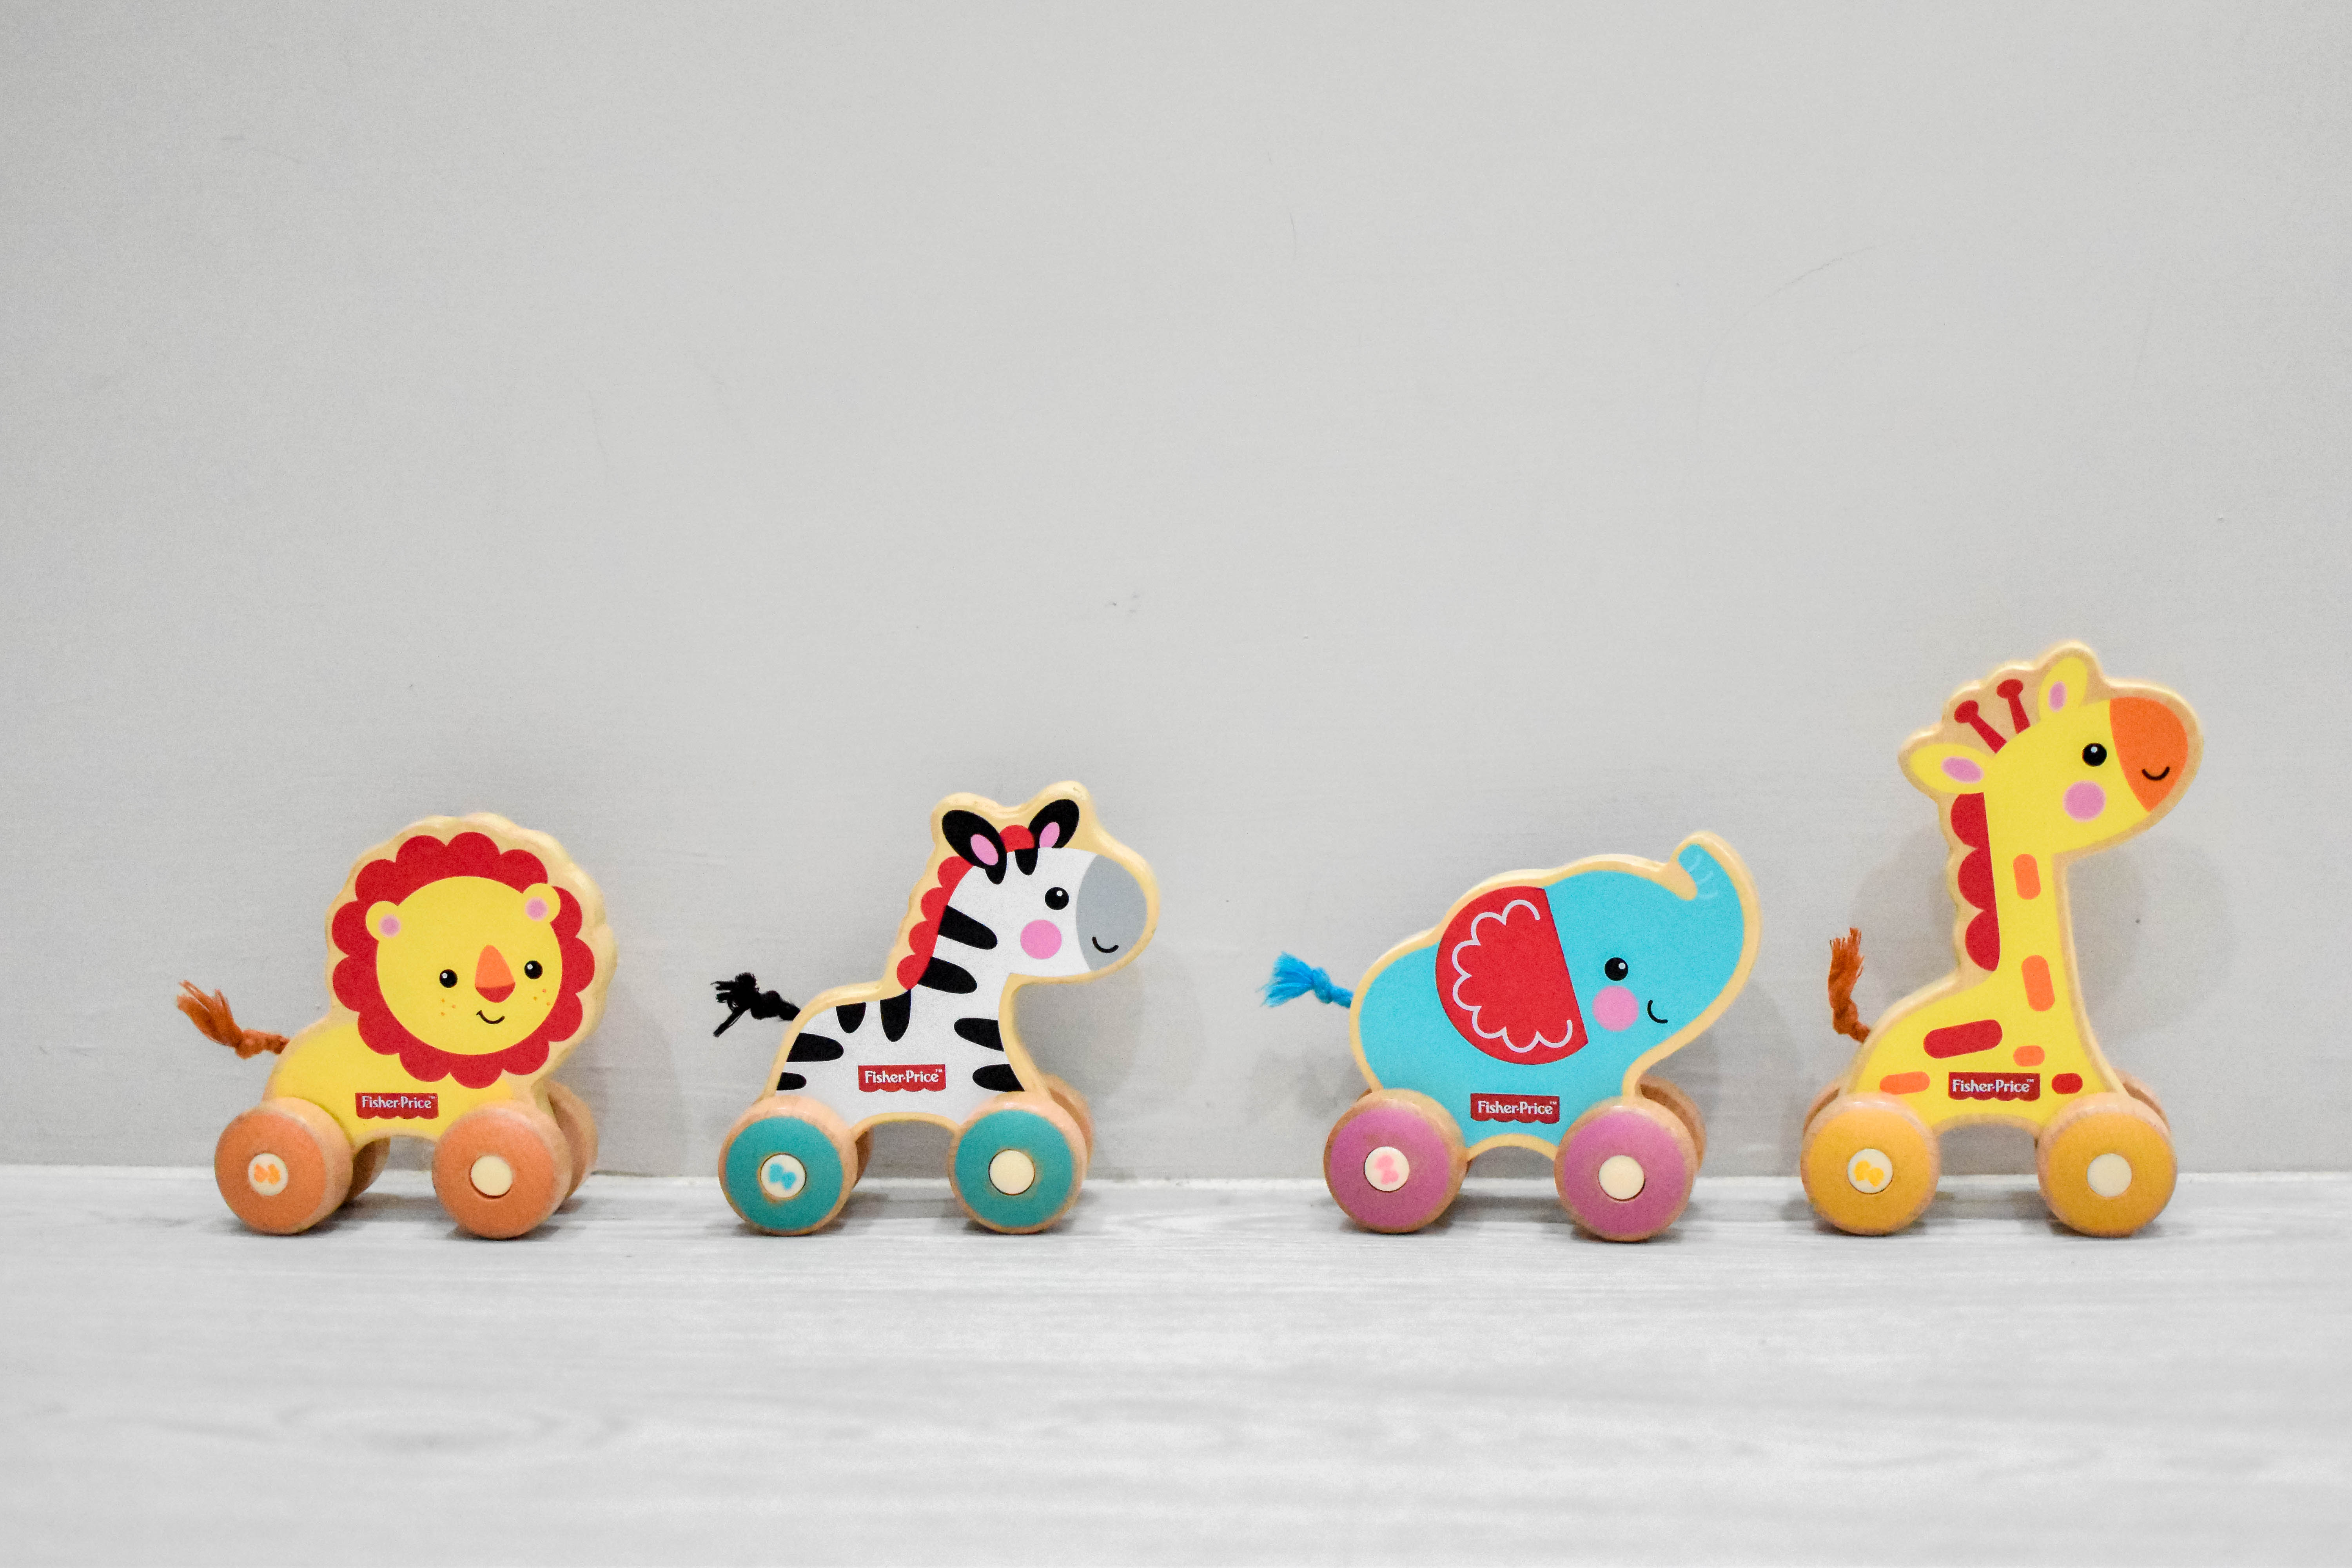 費雪玩具 費雪可愛木製小動物手推車